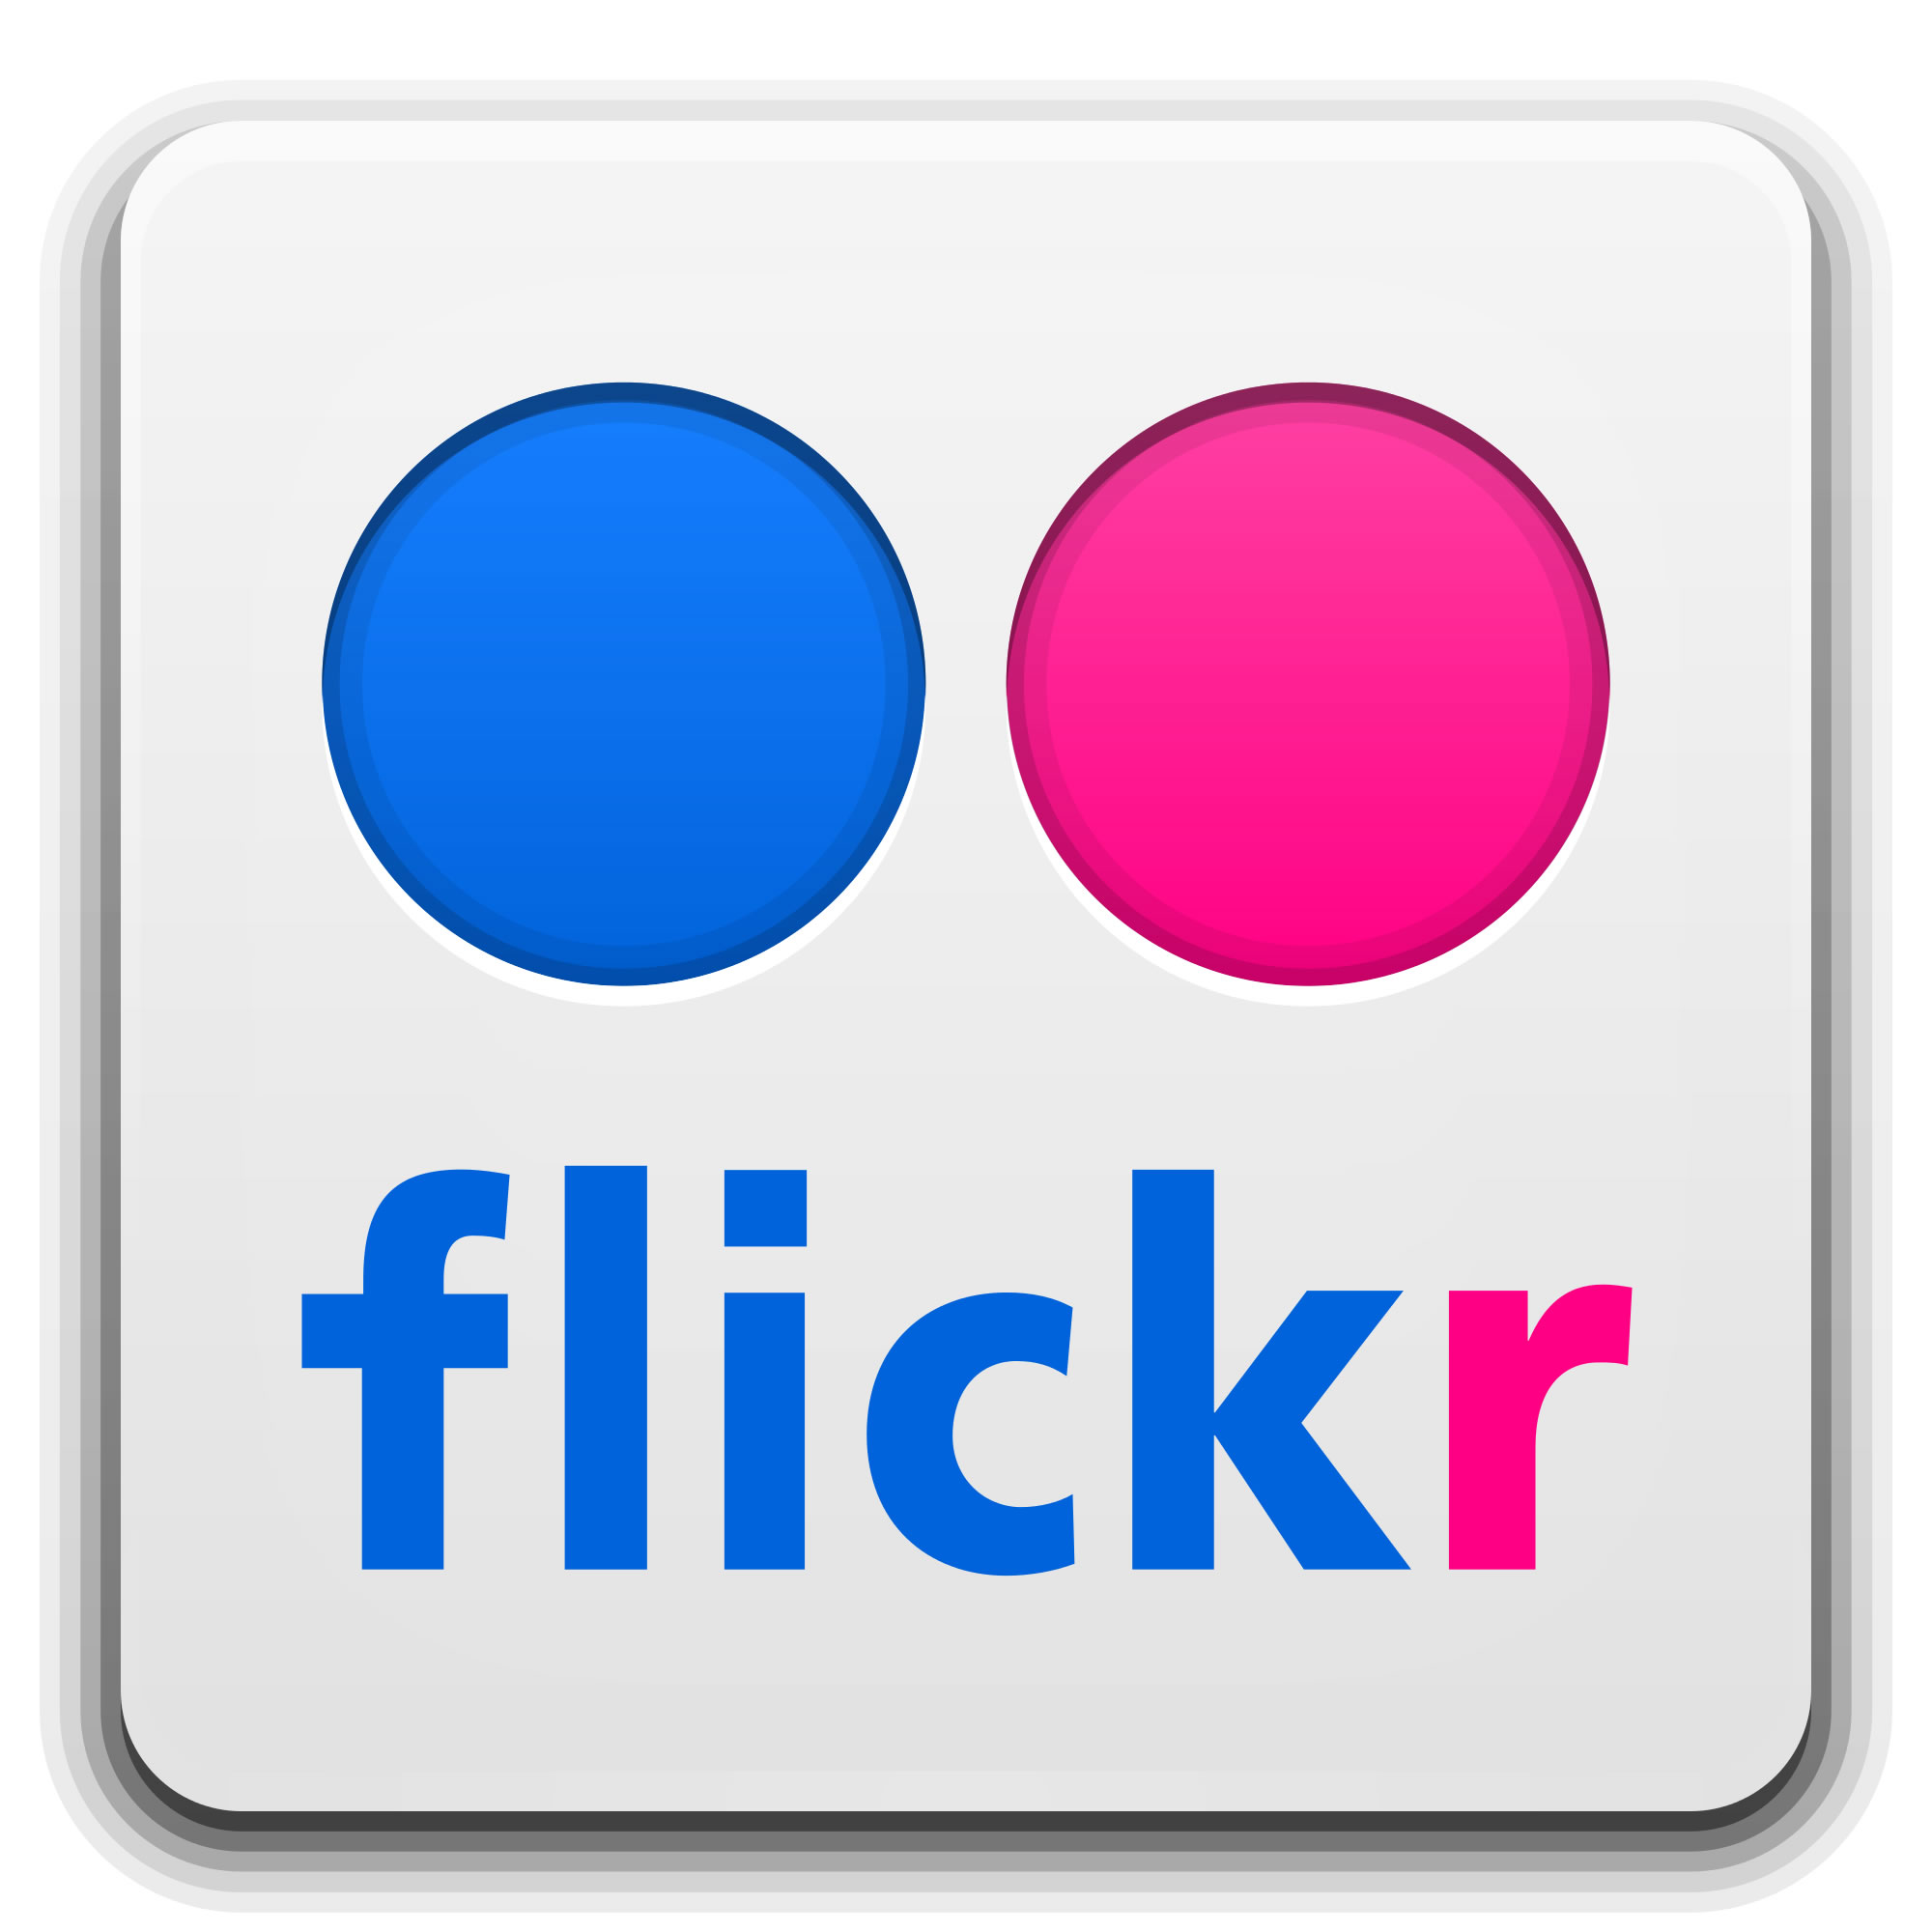 flickr link